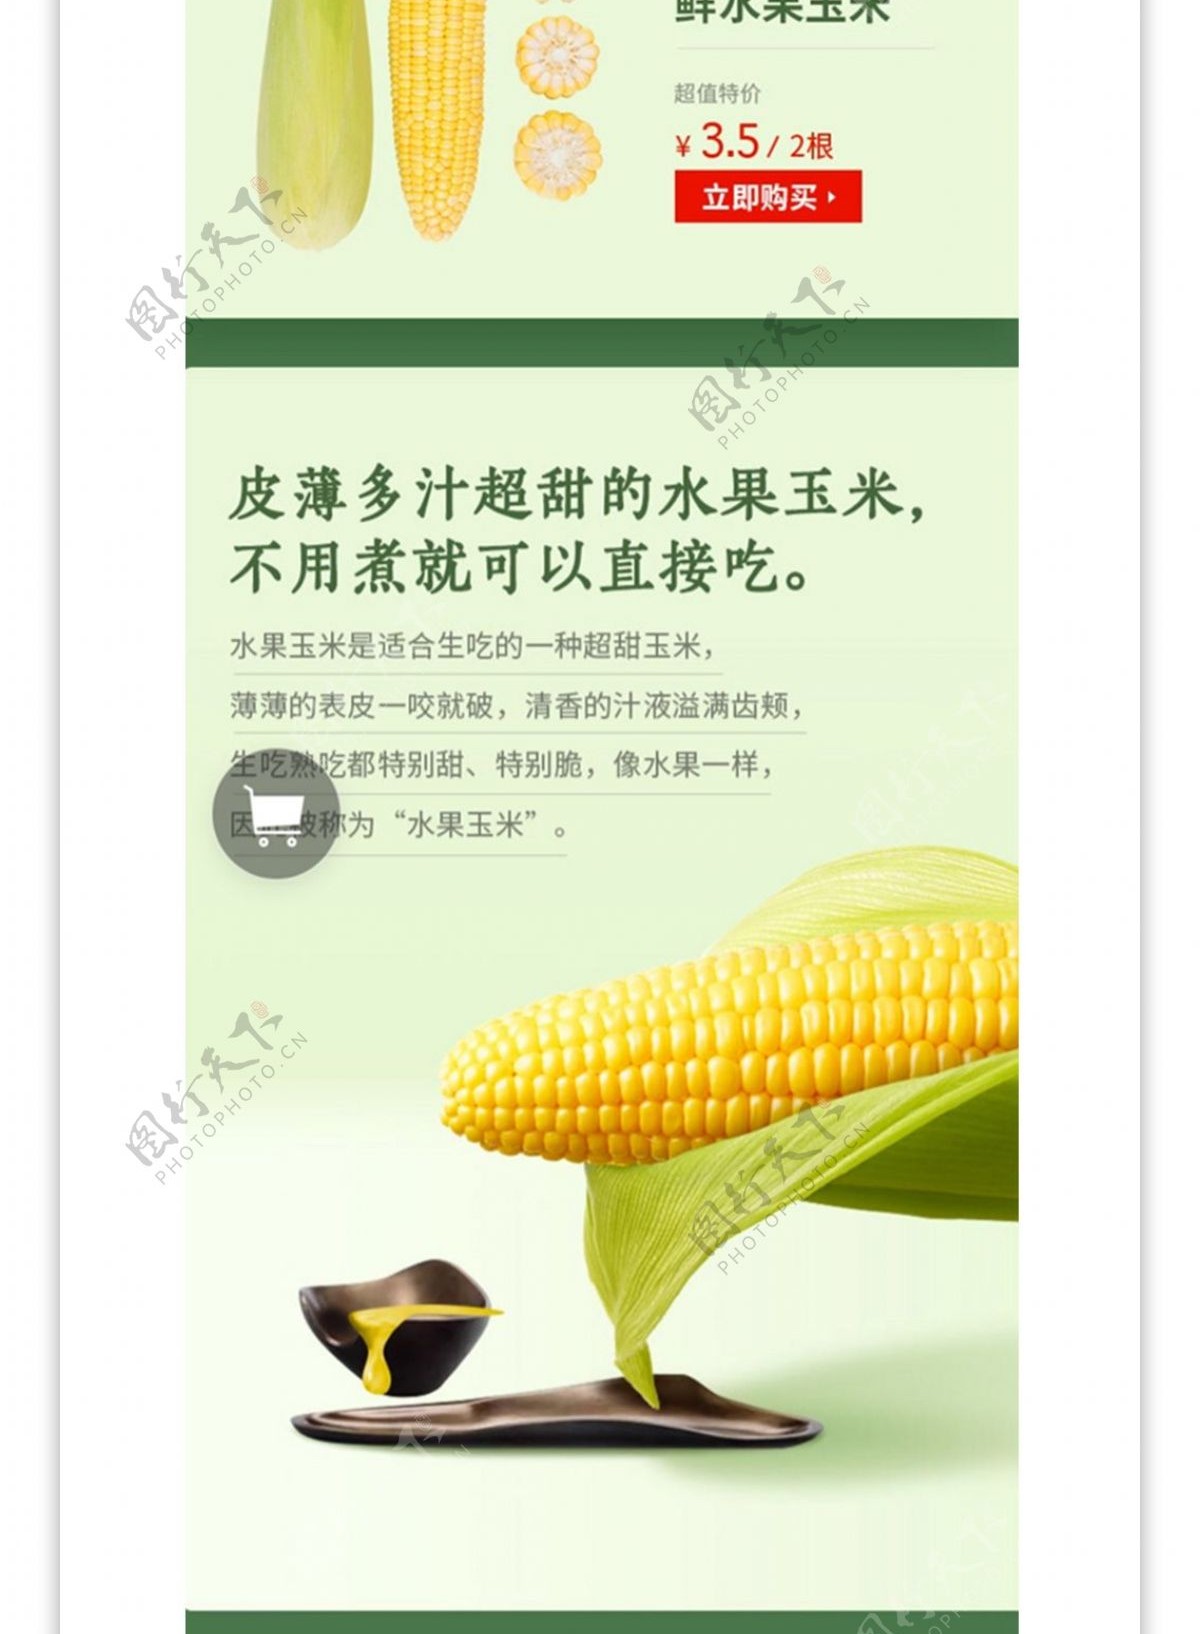 电商淘宝食品水果生鲜玉米详情页